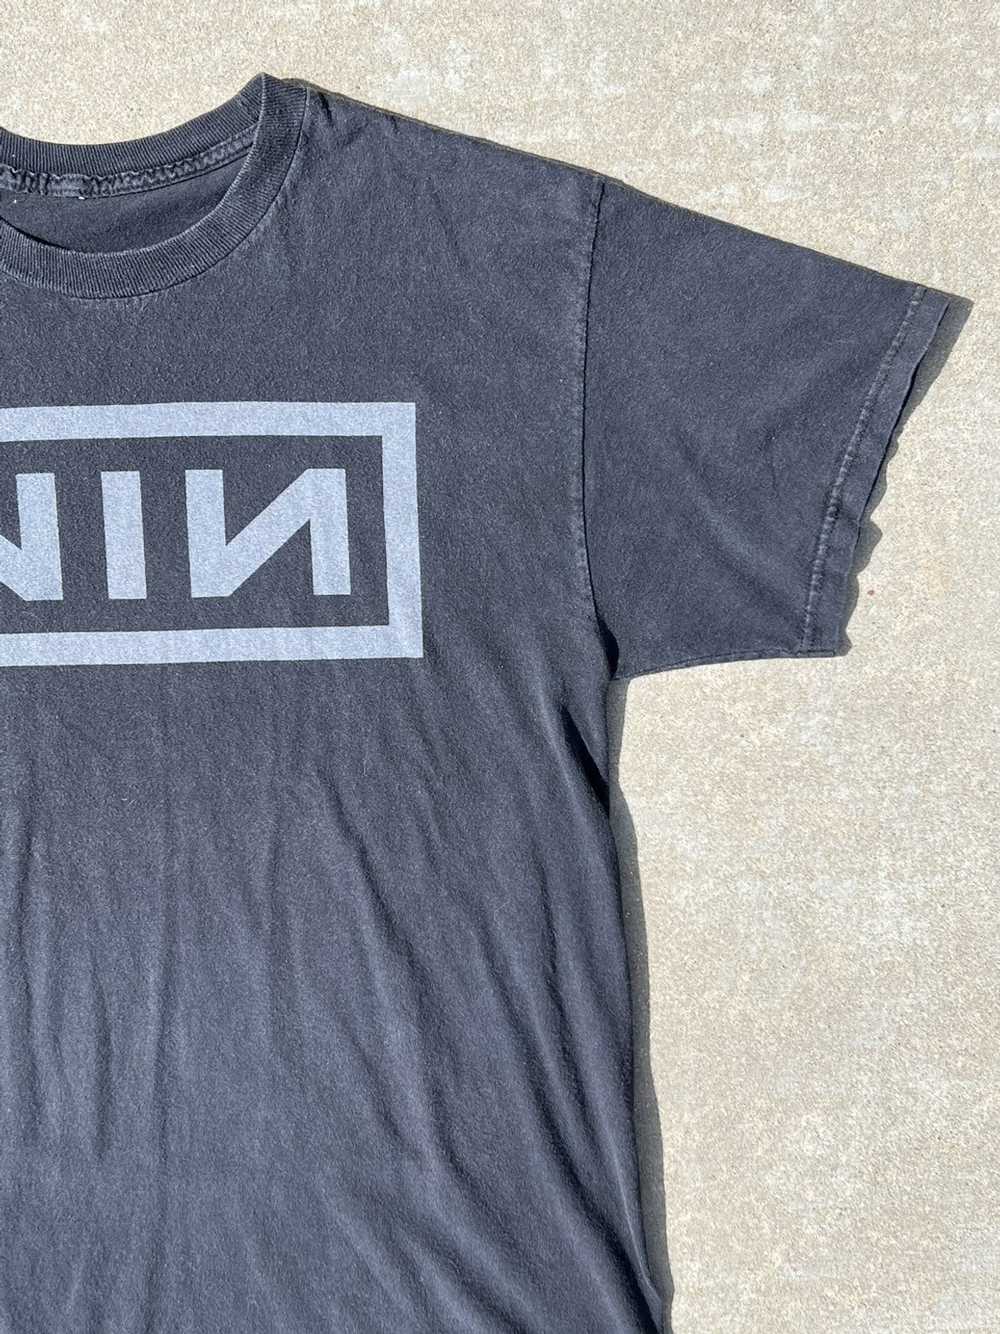 Vintage Vintage Nine Inch Nails T Shirt - image 2